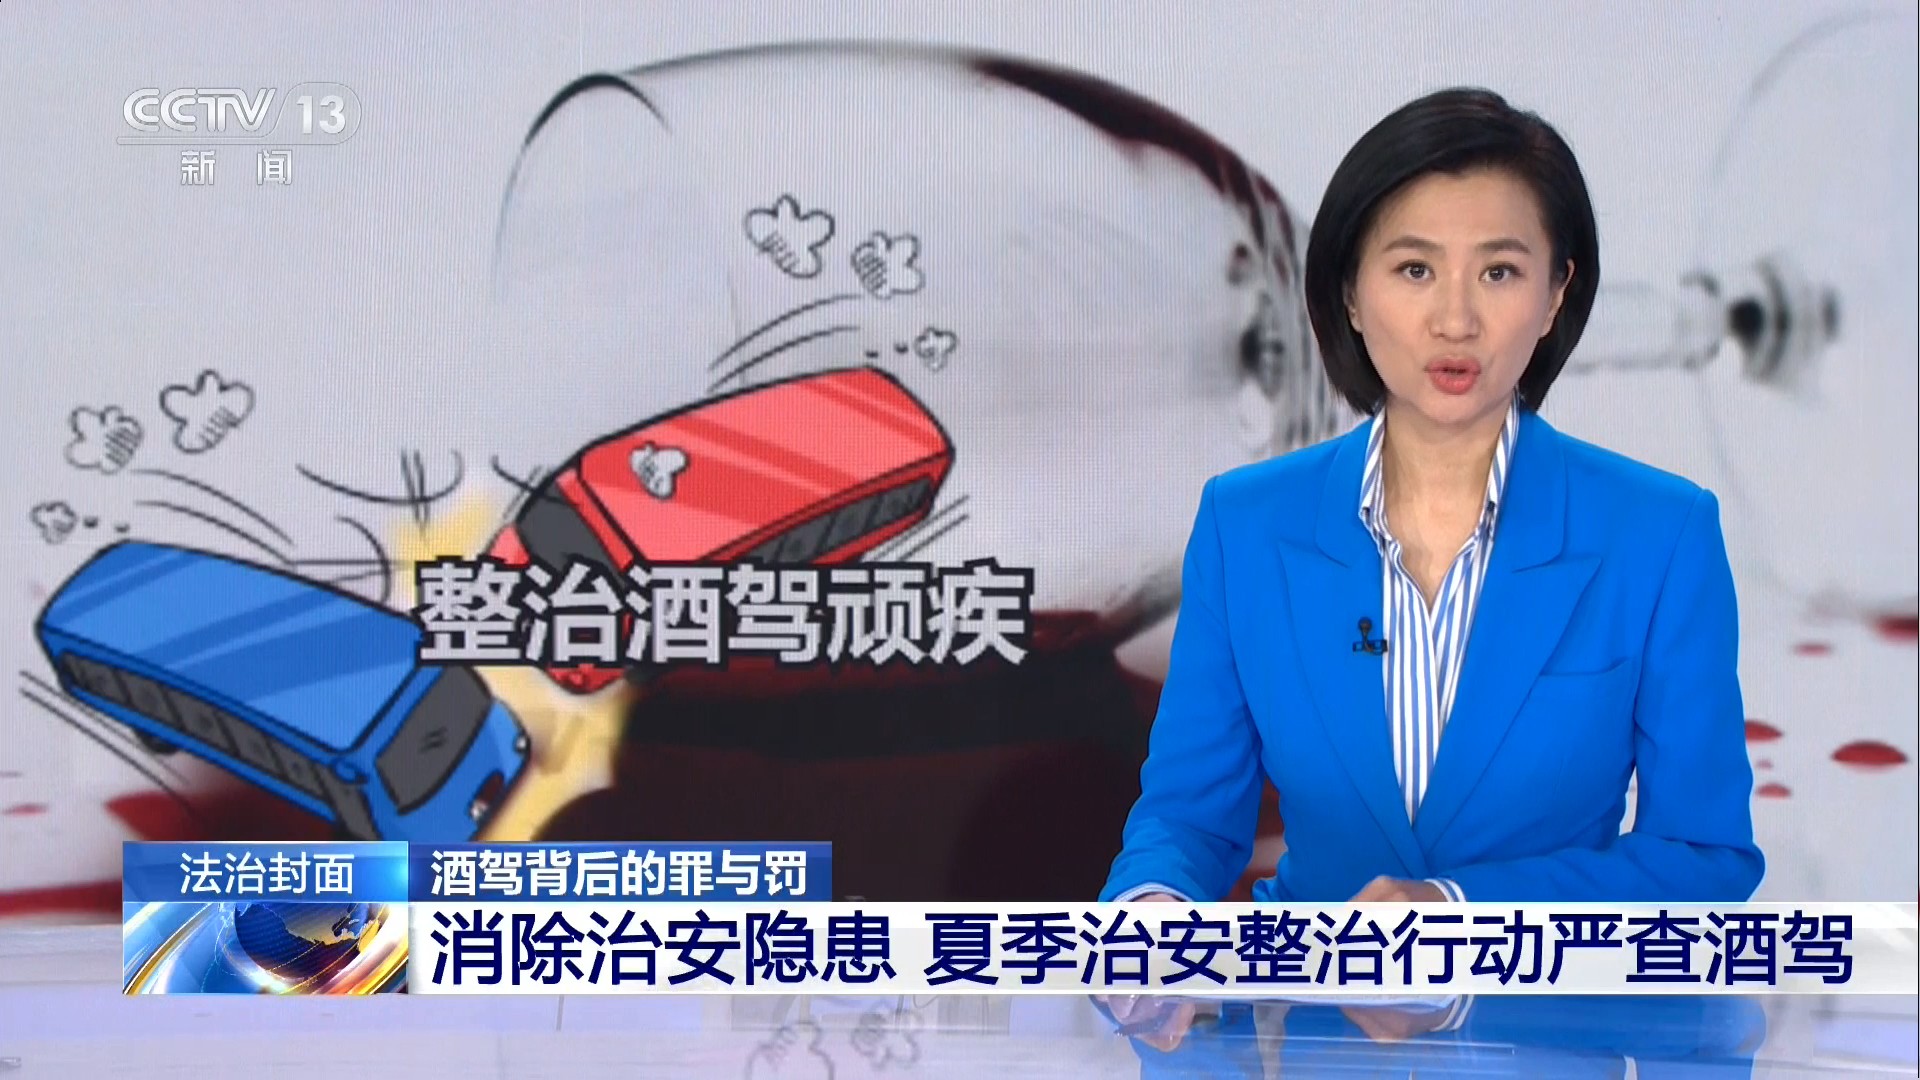 中央电视台CCTV-13新闻频道 法治在线 酒驾背后的罪与罚 消除治安隐患 夏季治安整治行动严查酒驾